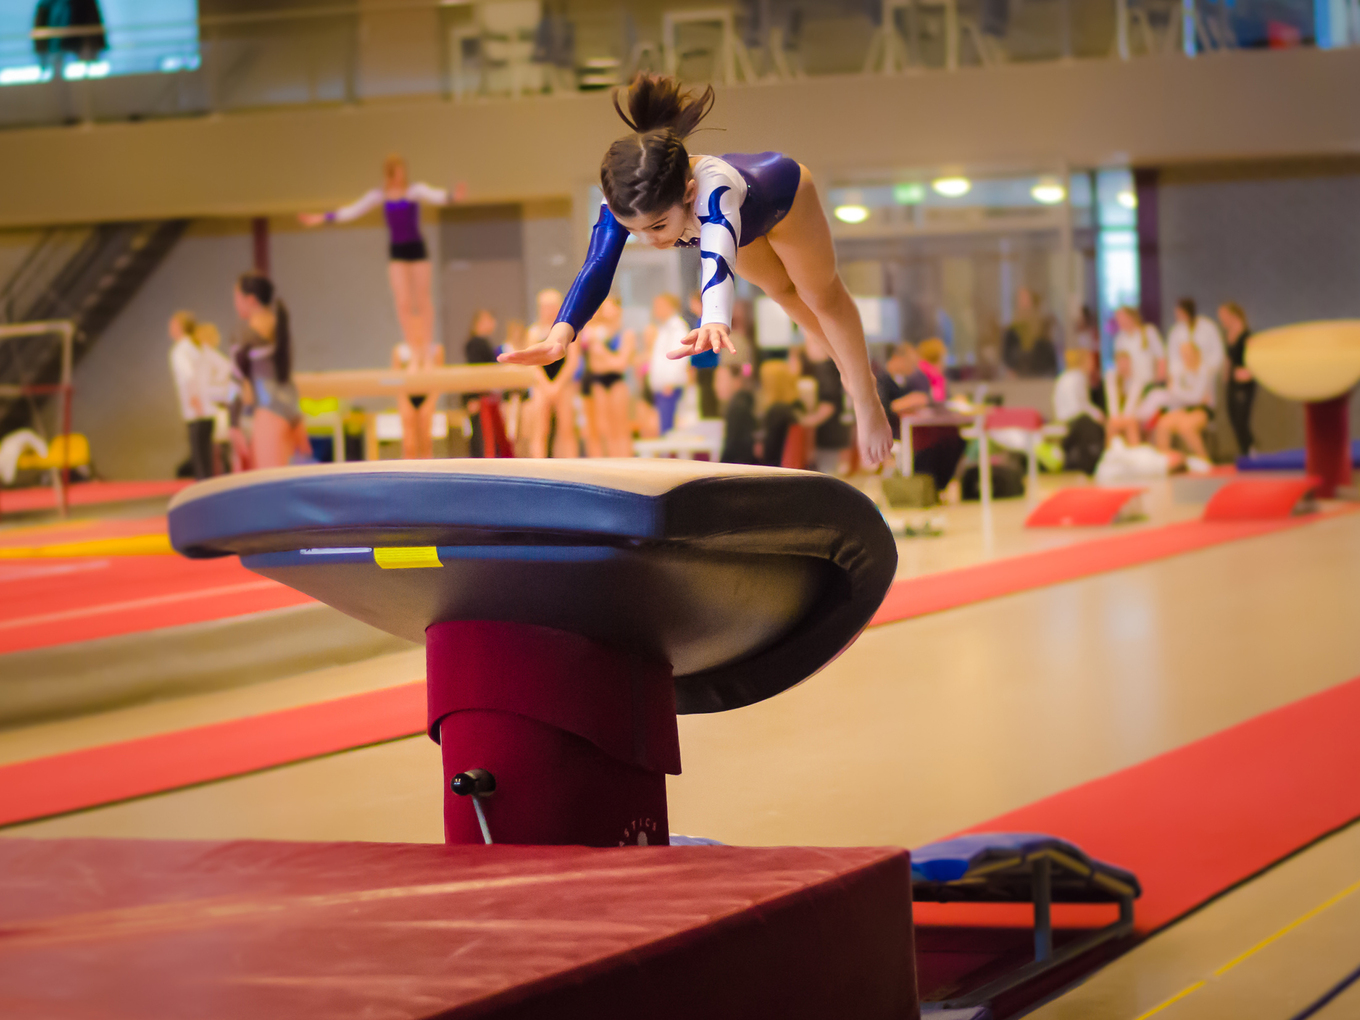 Mädchen in Turnanzug springt in einer Turnhalle über einen Turnbock